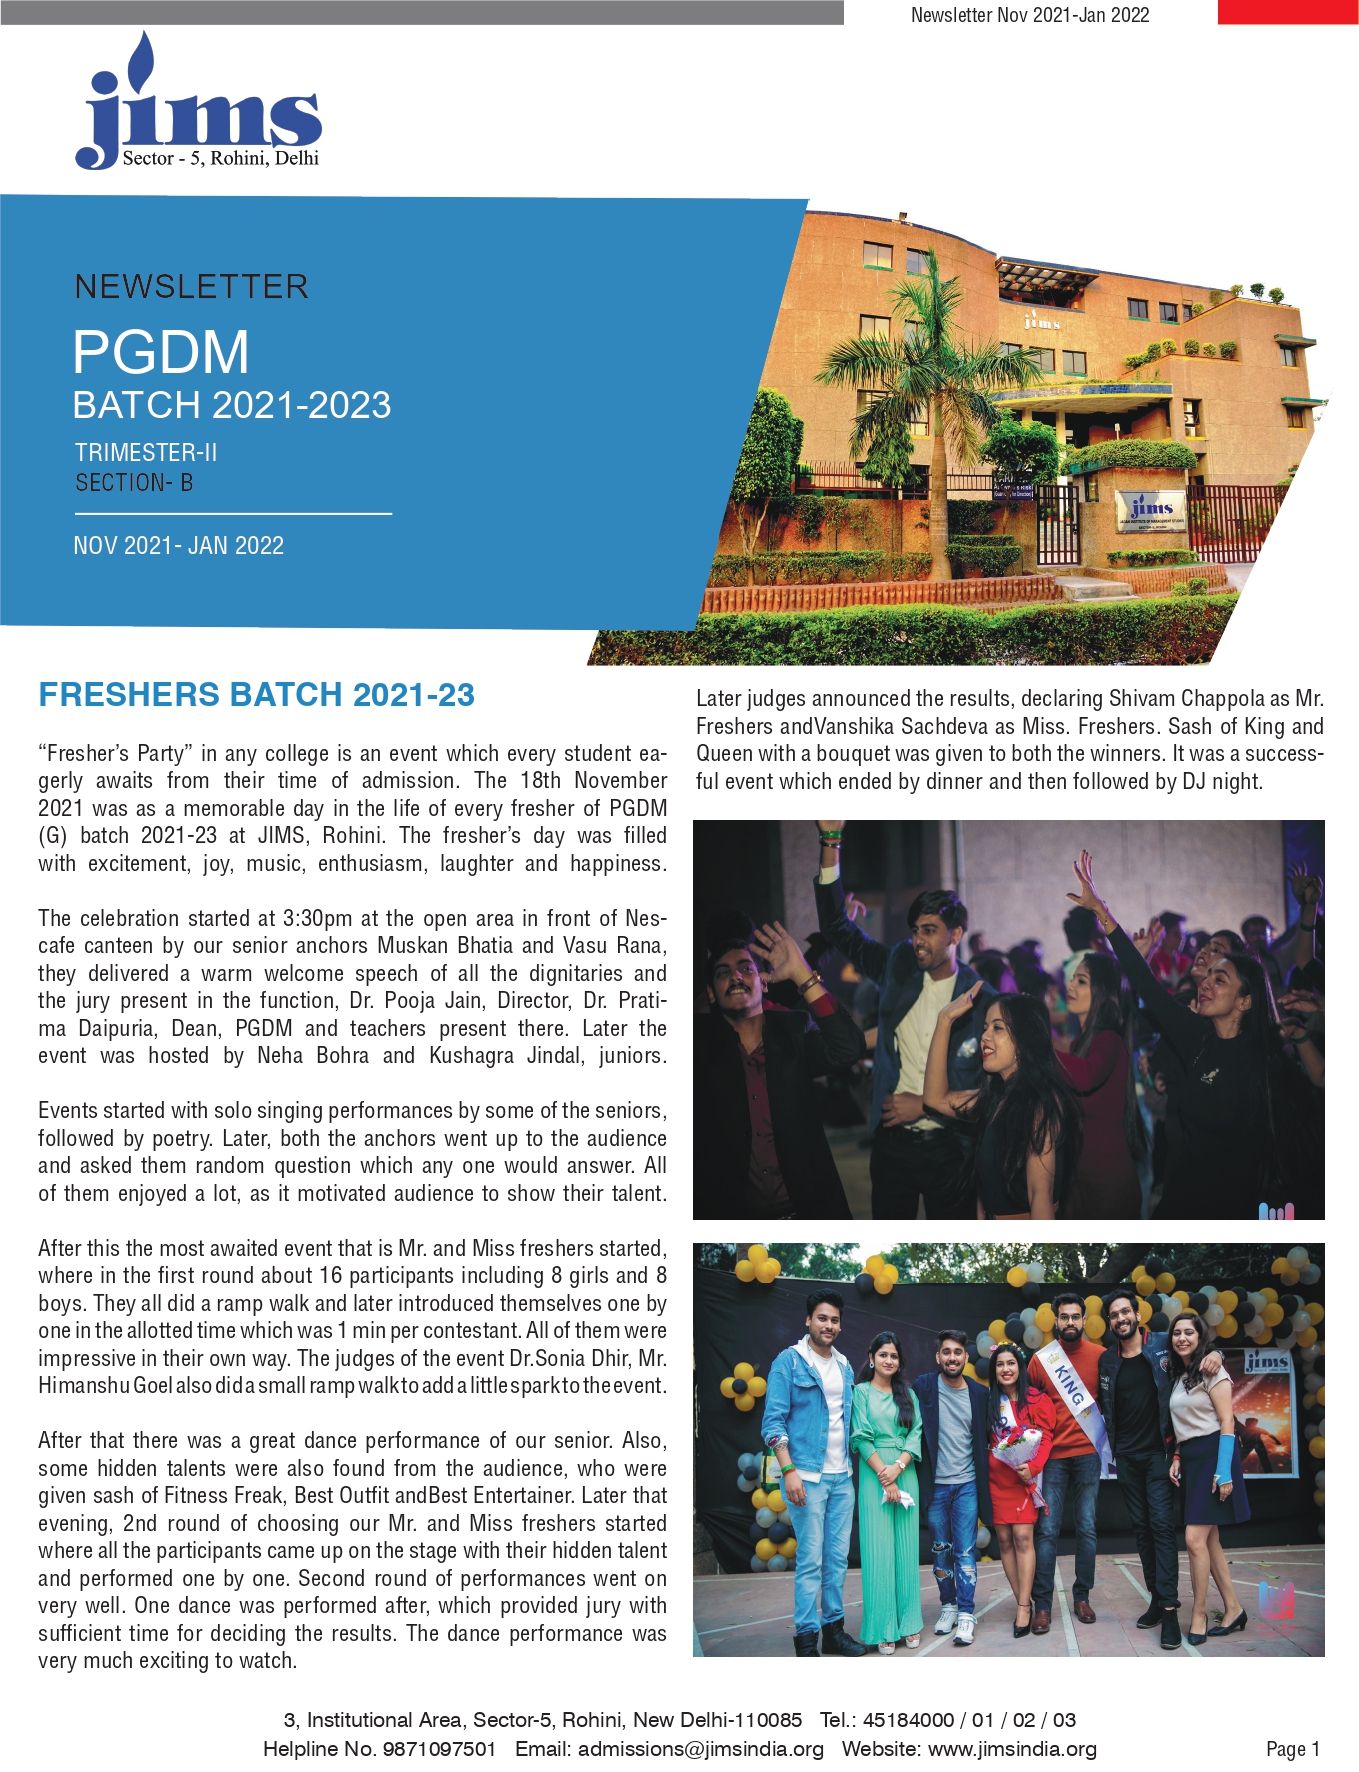 JIMS Rohini PGDM Online newsletter [Nov 2021 - Dec 2022]